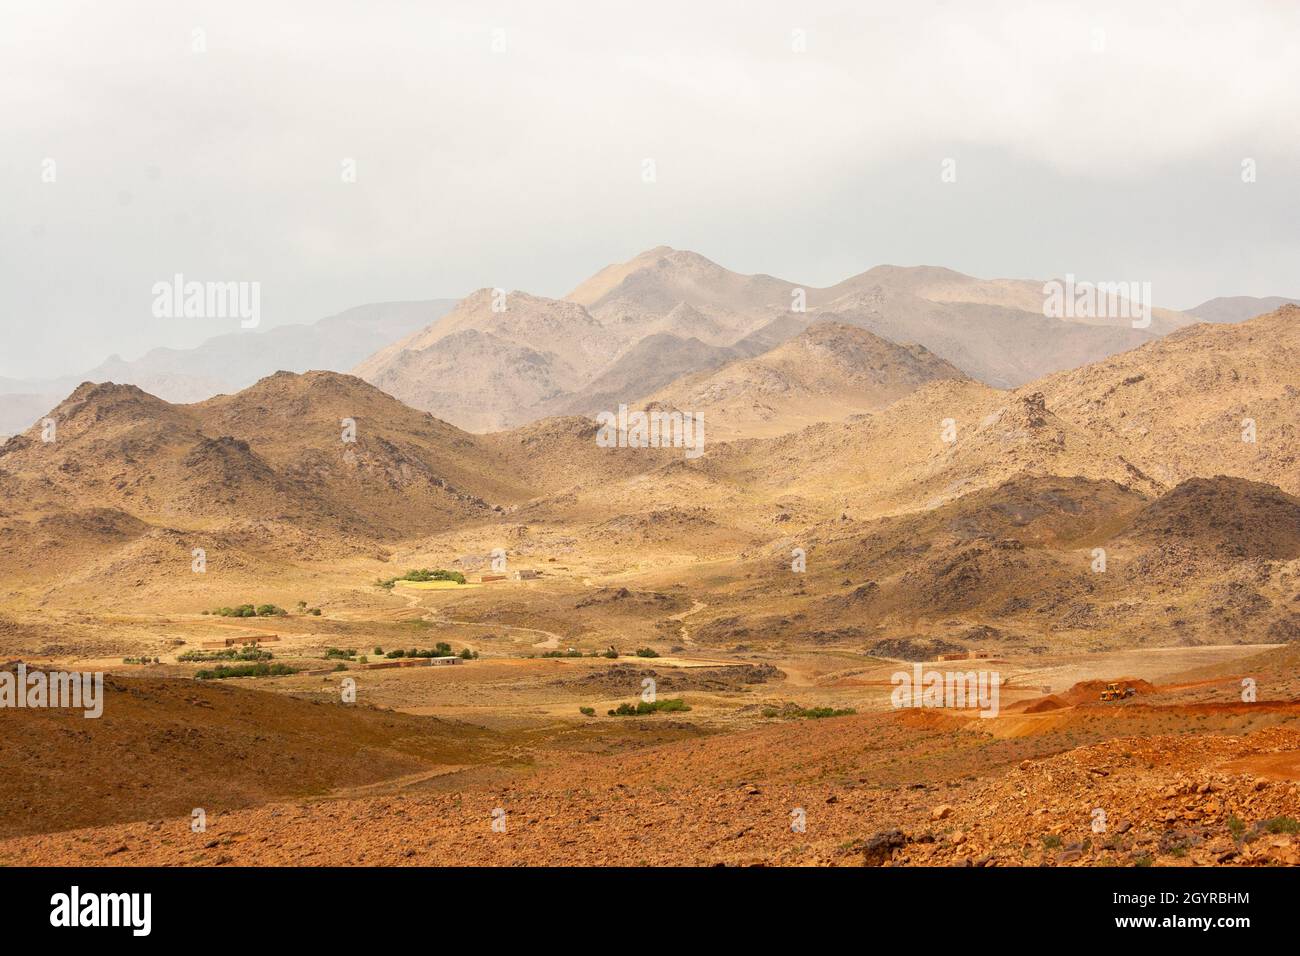 Paysage du désert du Sahara photographié au Maroc Banque D'Images